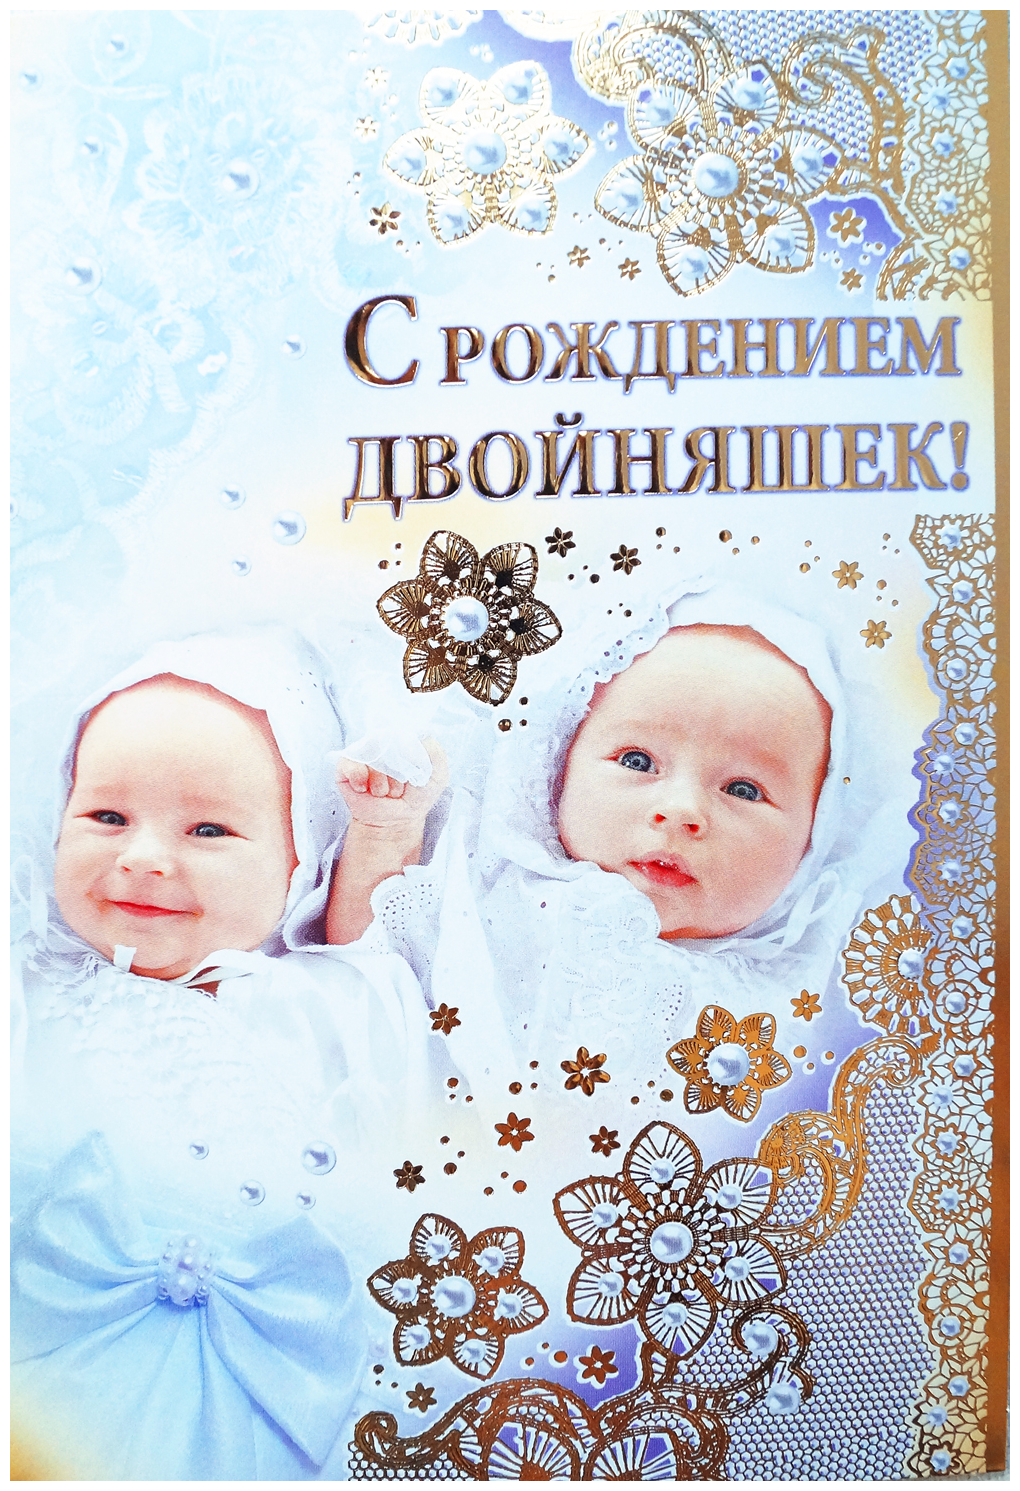 Поздравление с рождением тройняшек - лучшие открытки